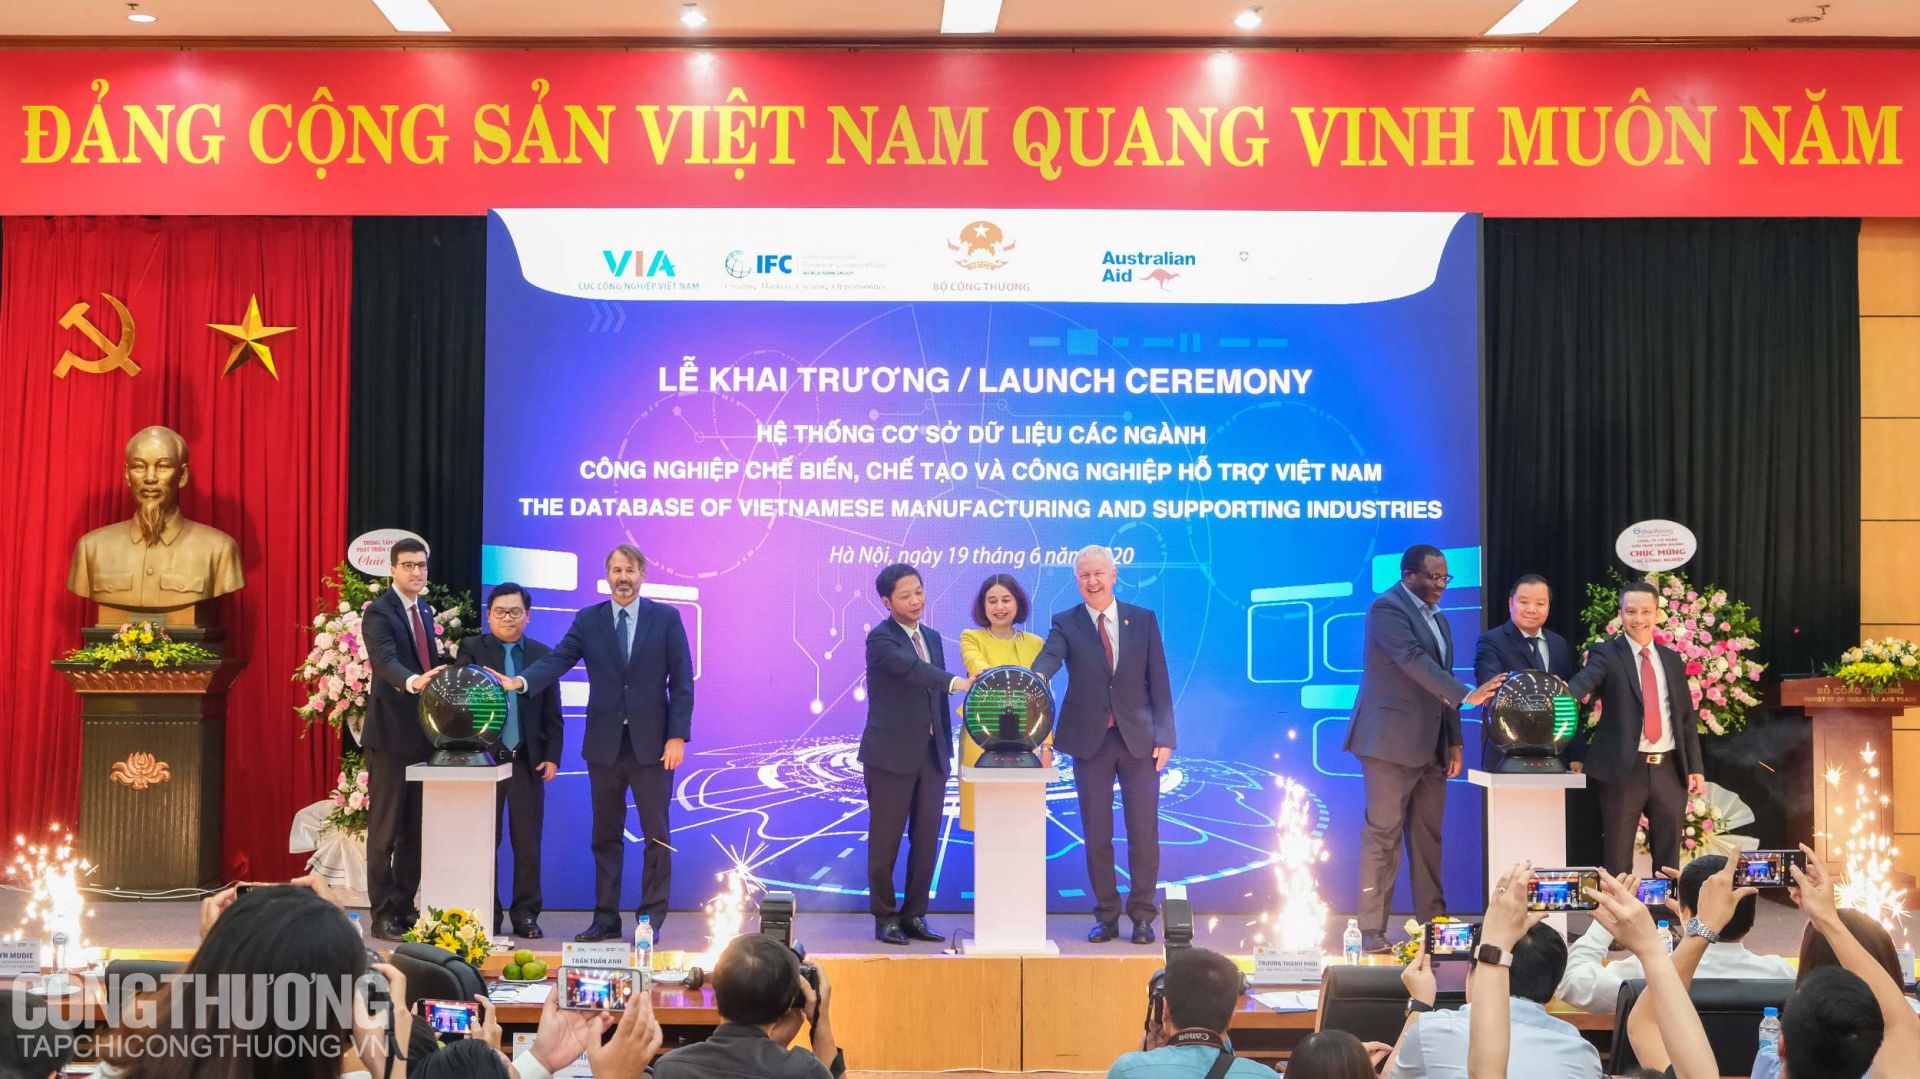 Đại biểu bấm nút khai trương Hệ thống cơ sở dữ liệu các ngành công nghiệp chế biến, chế tạo và công nghiệp hỗ trợ Việt Nam